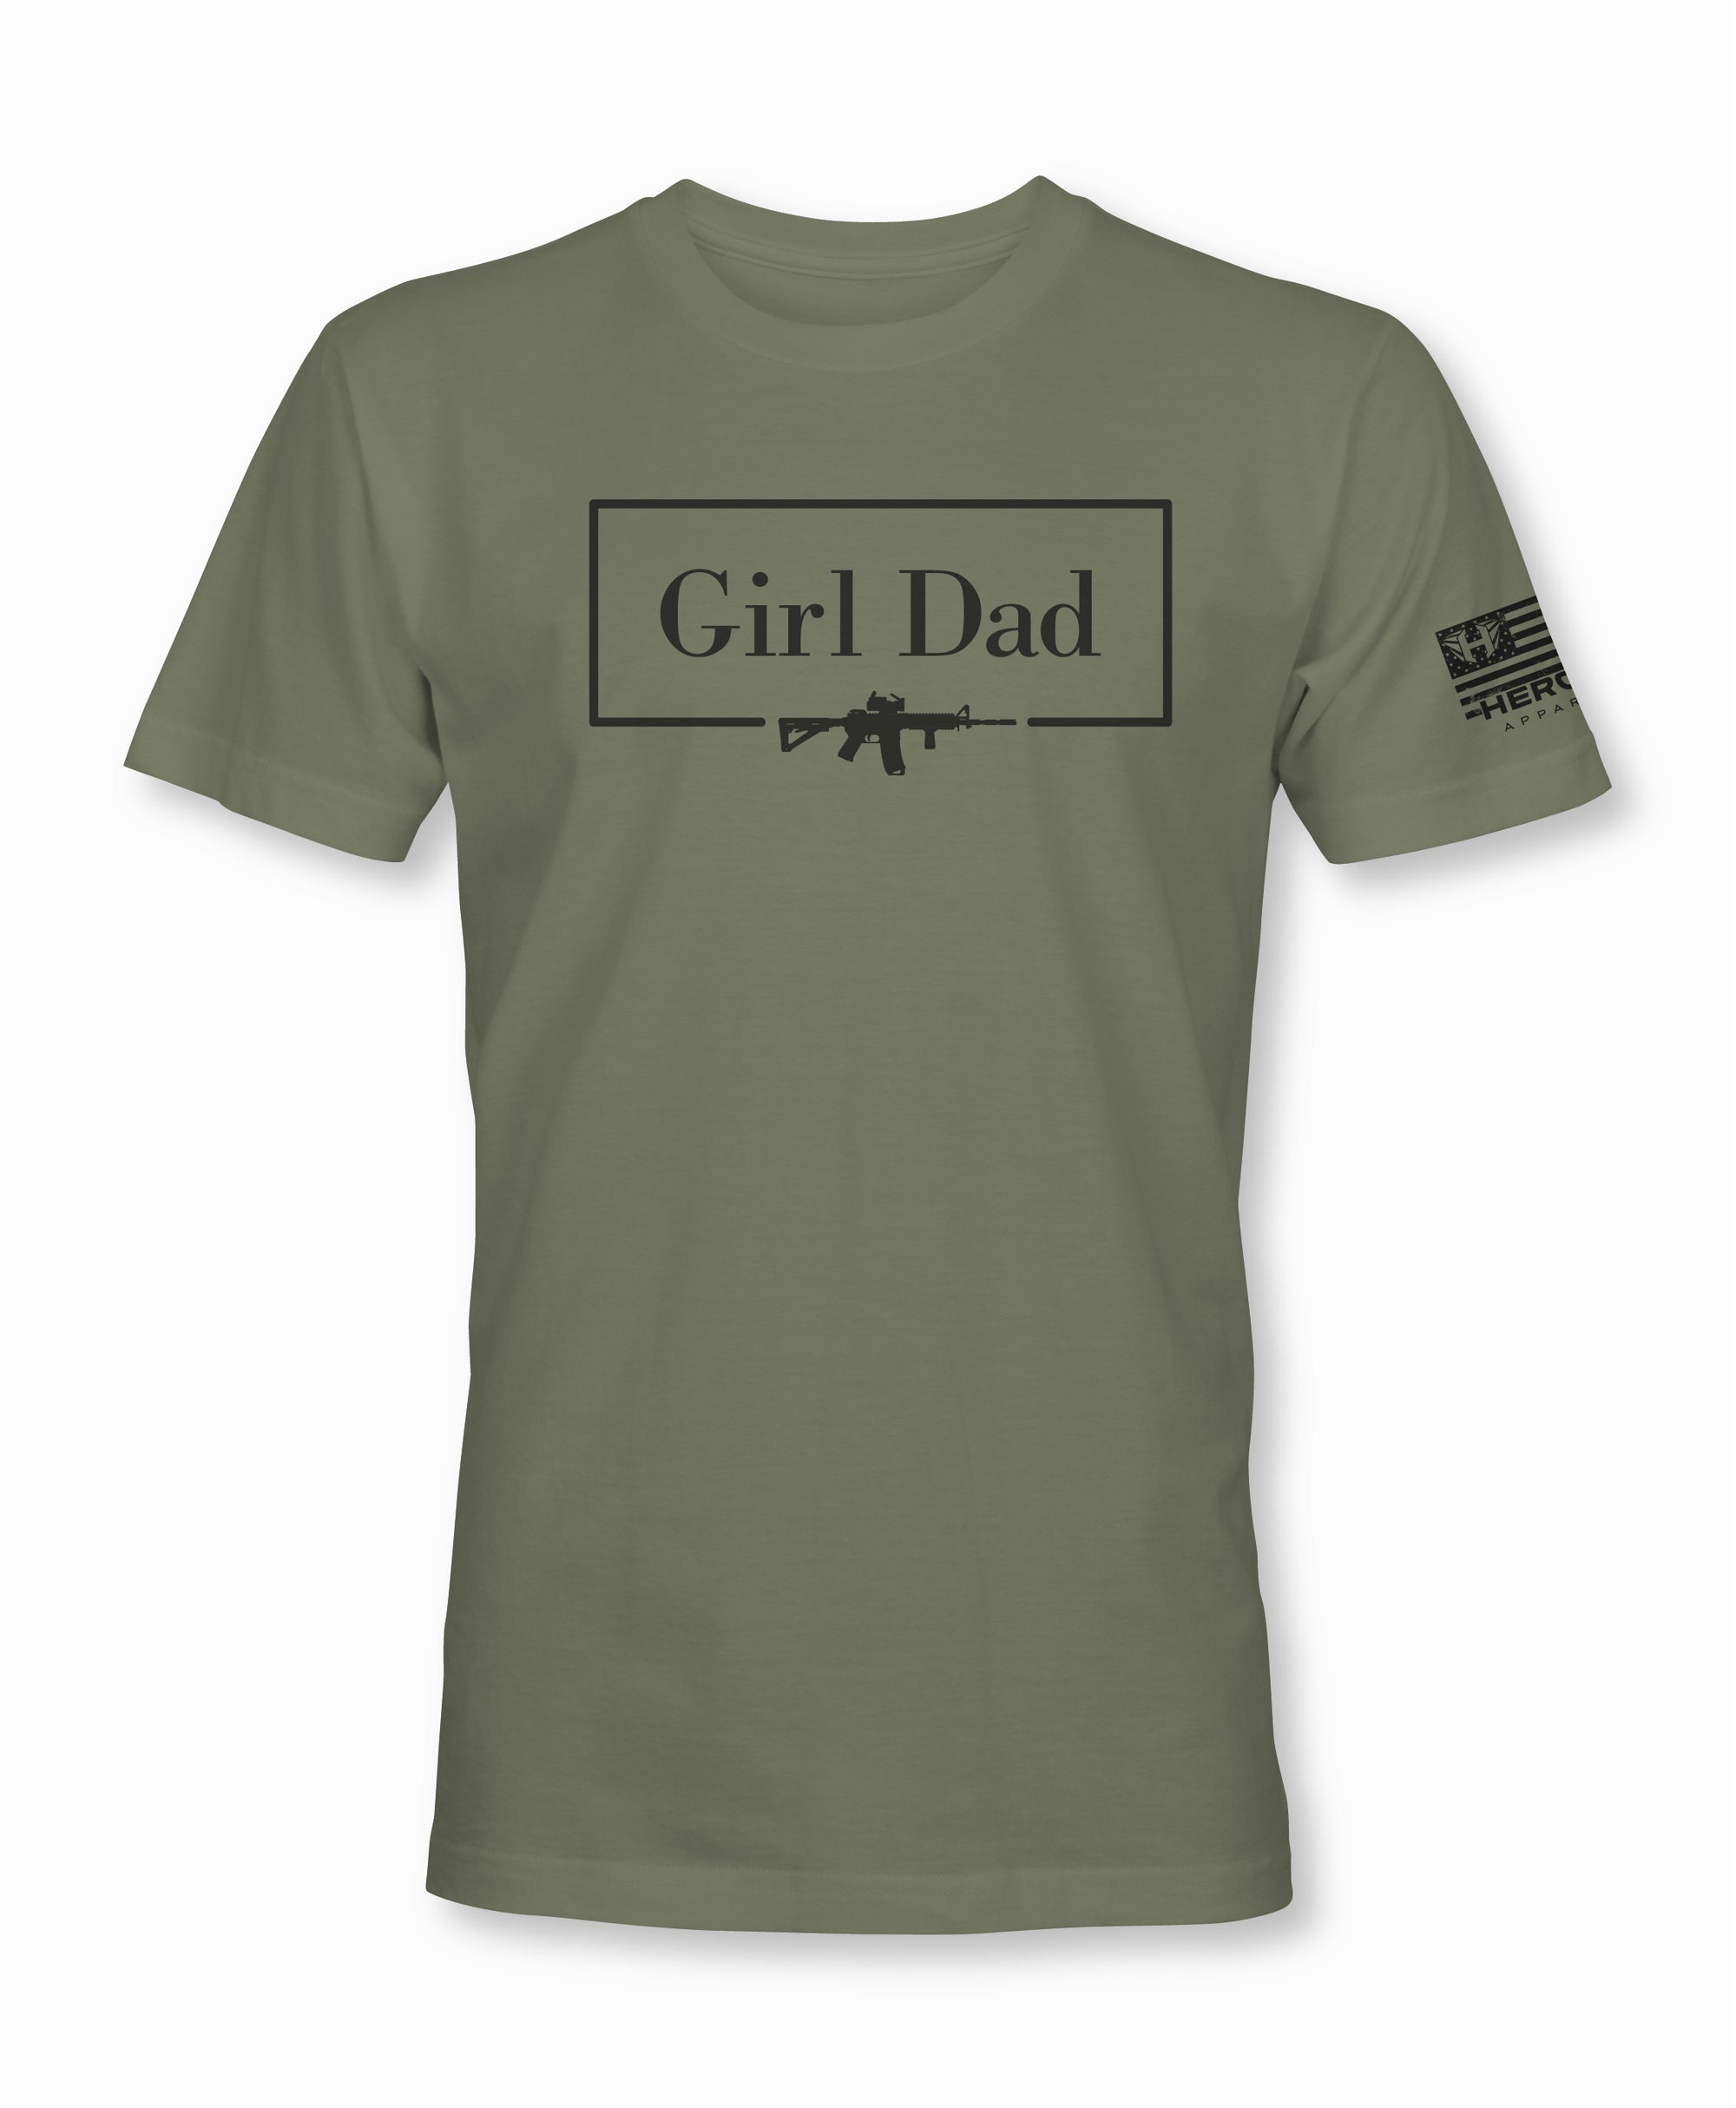 Girl Dad 2.0 Tactical Shirt